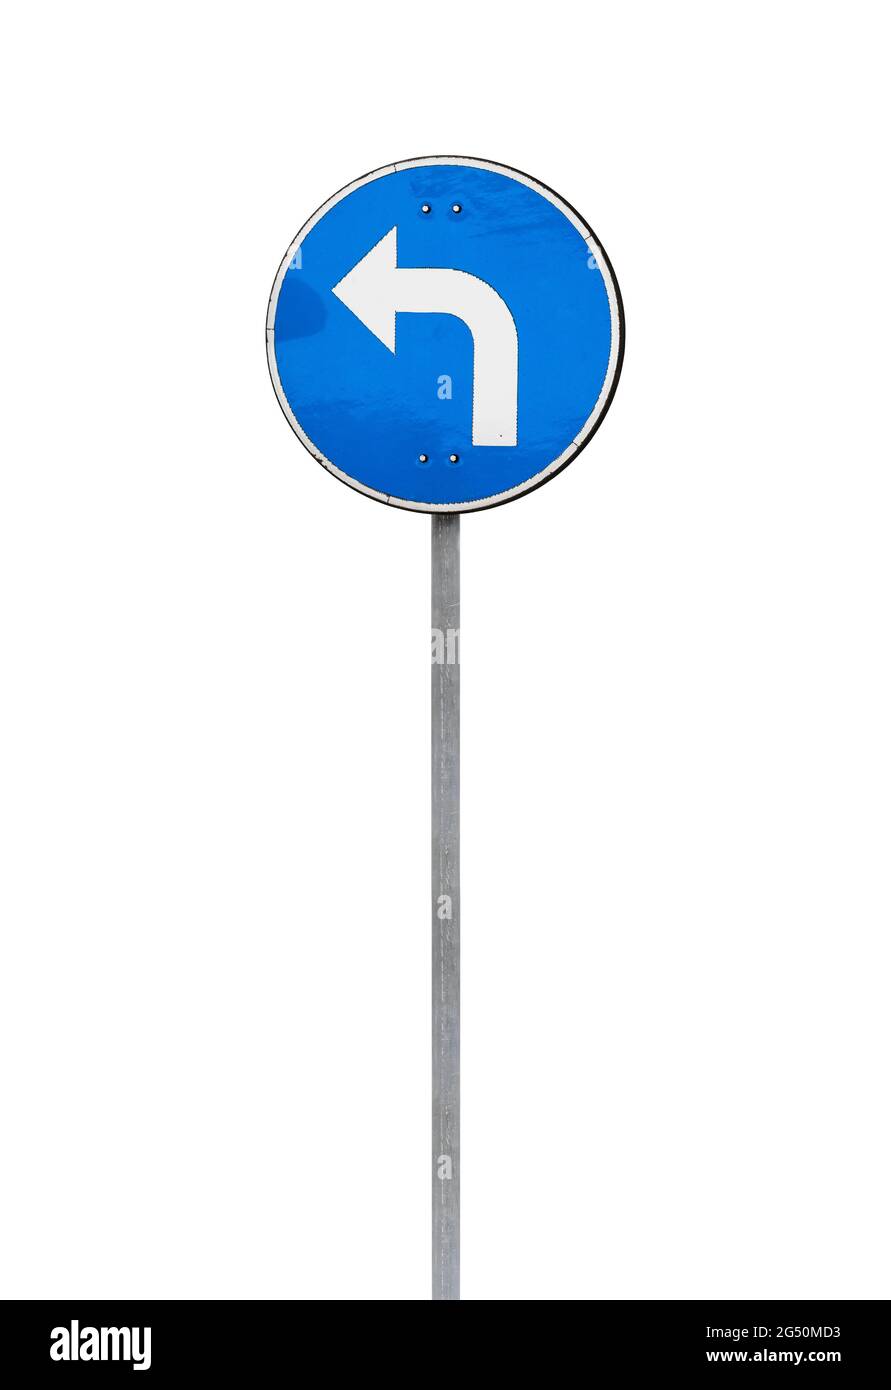 Biegen Sie links ab, Standard-europäisches Straßenschild auf vertikalem Metallmast isoliert auf weißem Hintergrund Stockfoto